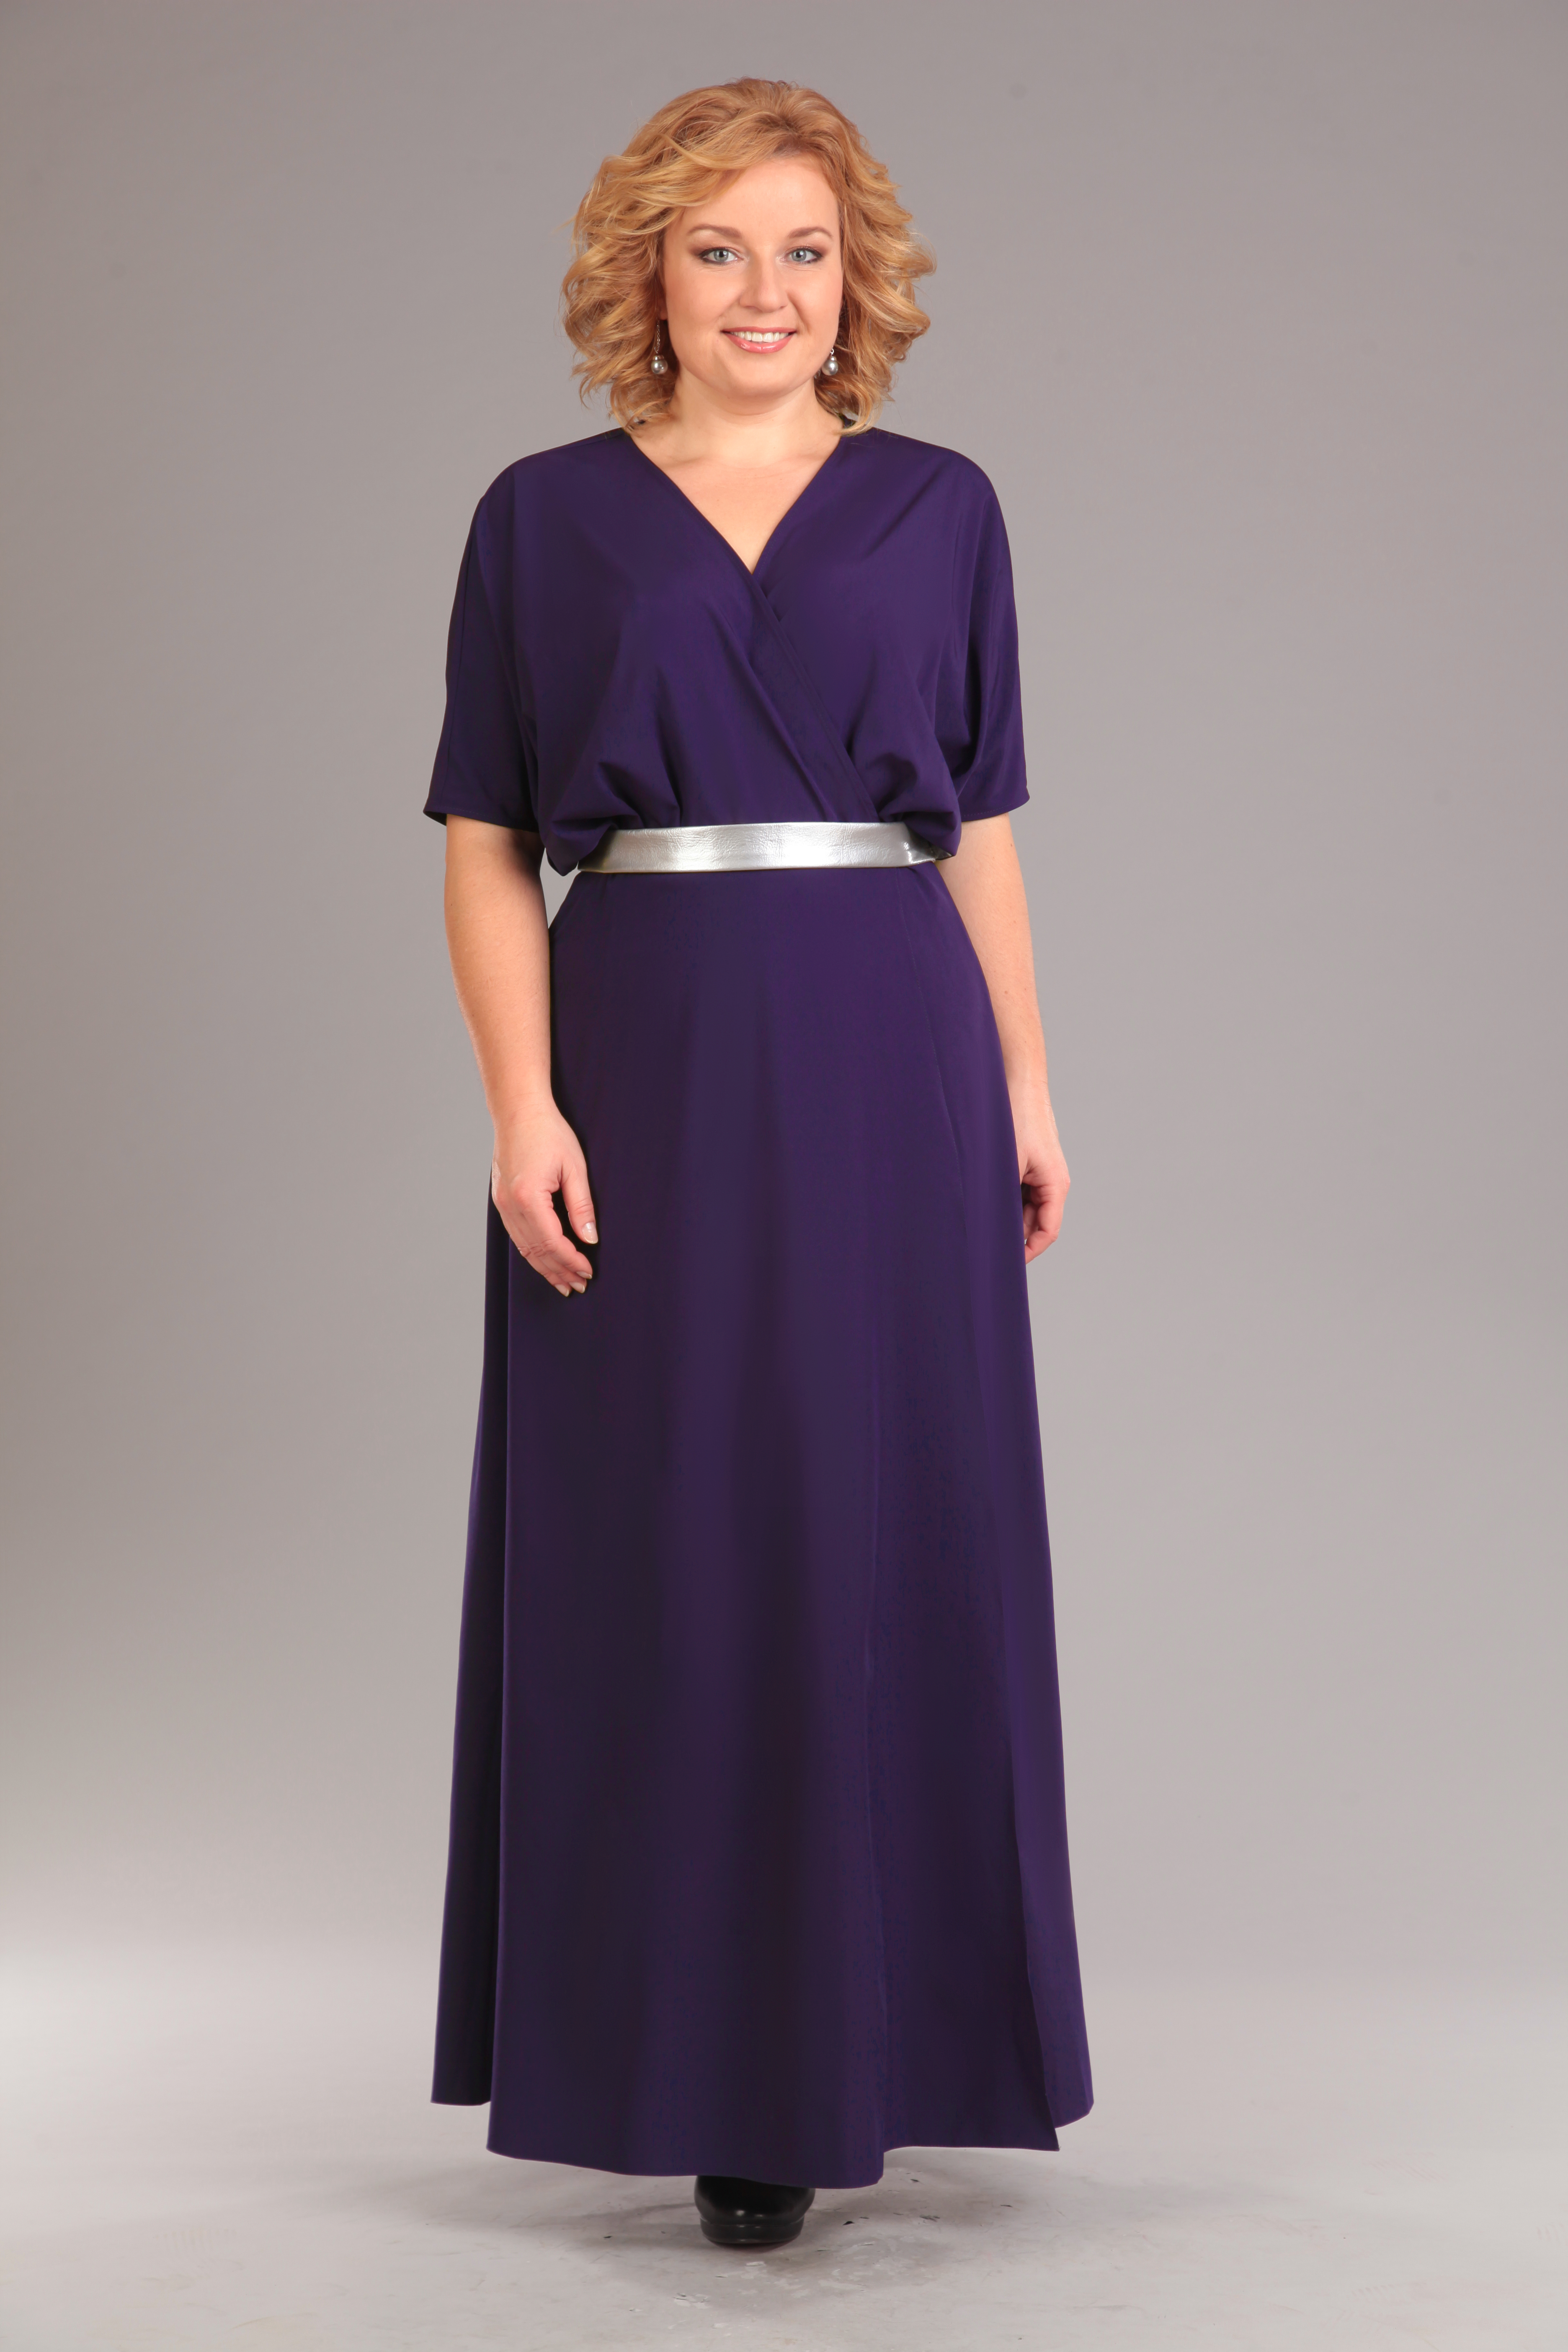 Длинное платье с запахом и декоративным поясом, фиолетовое